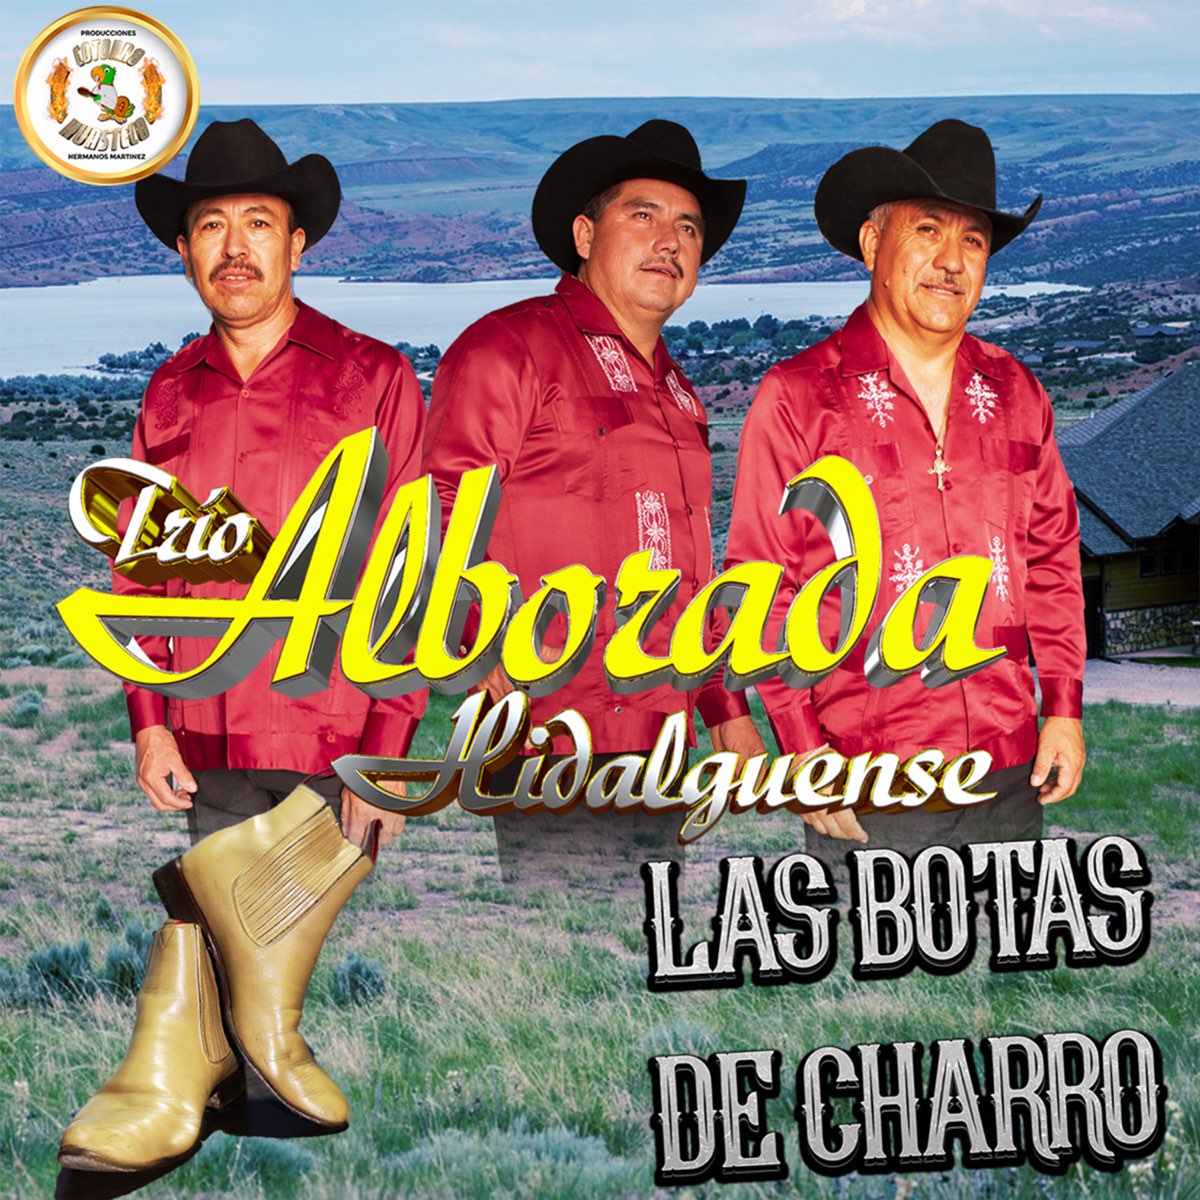 Las Botas de Charro - Single by Trio Alborada Hidalguense on Apple Music